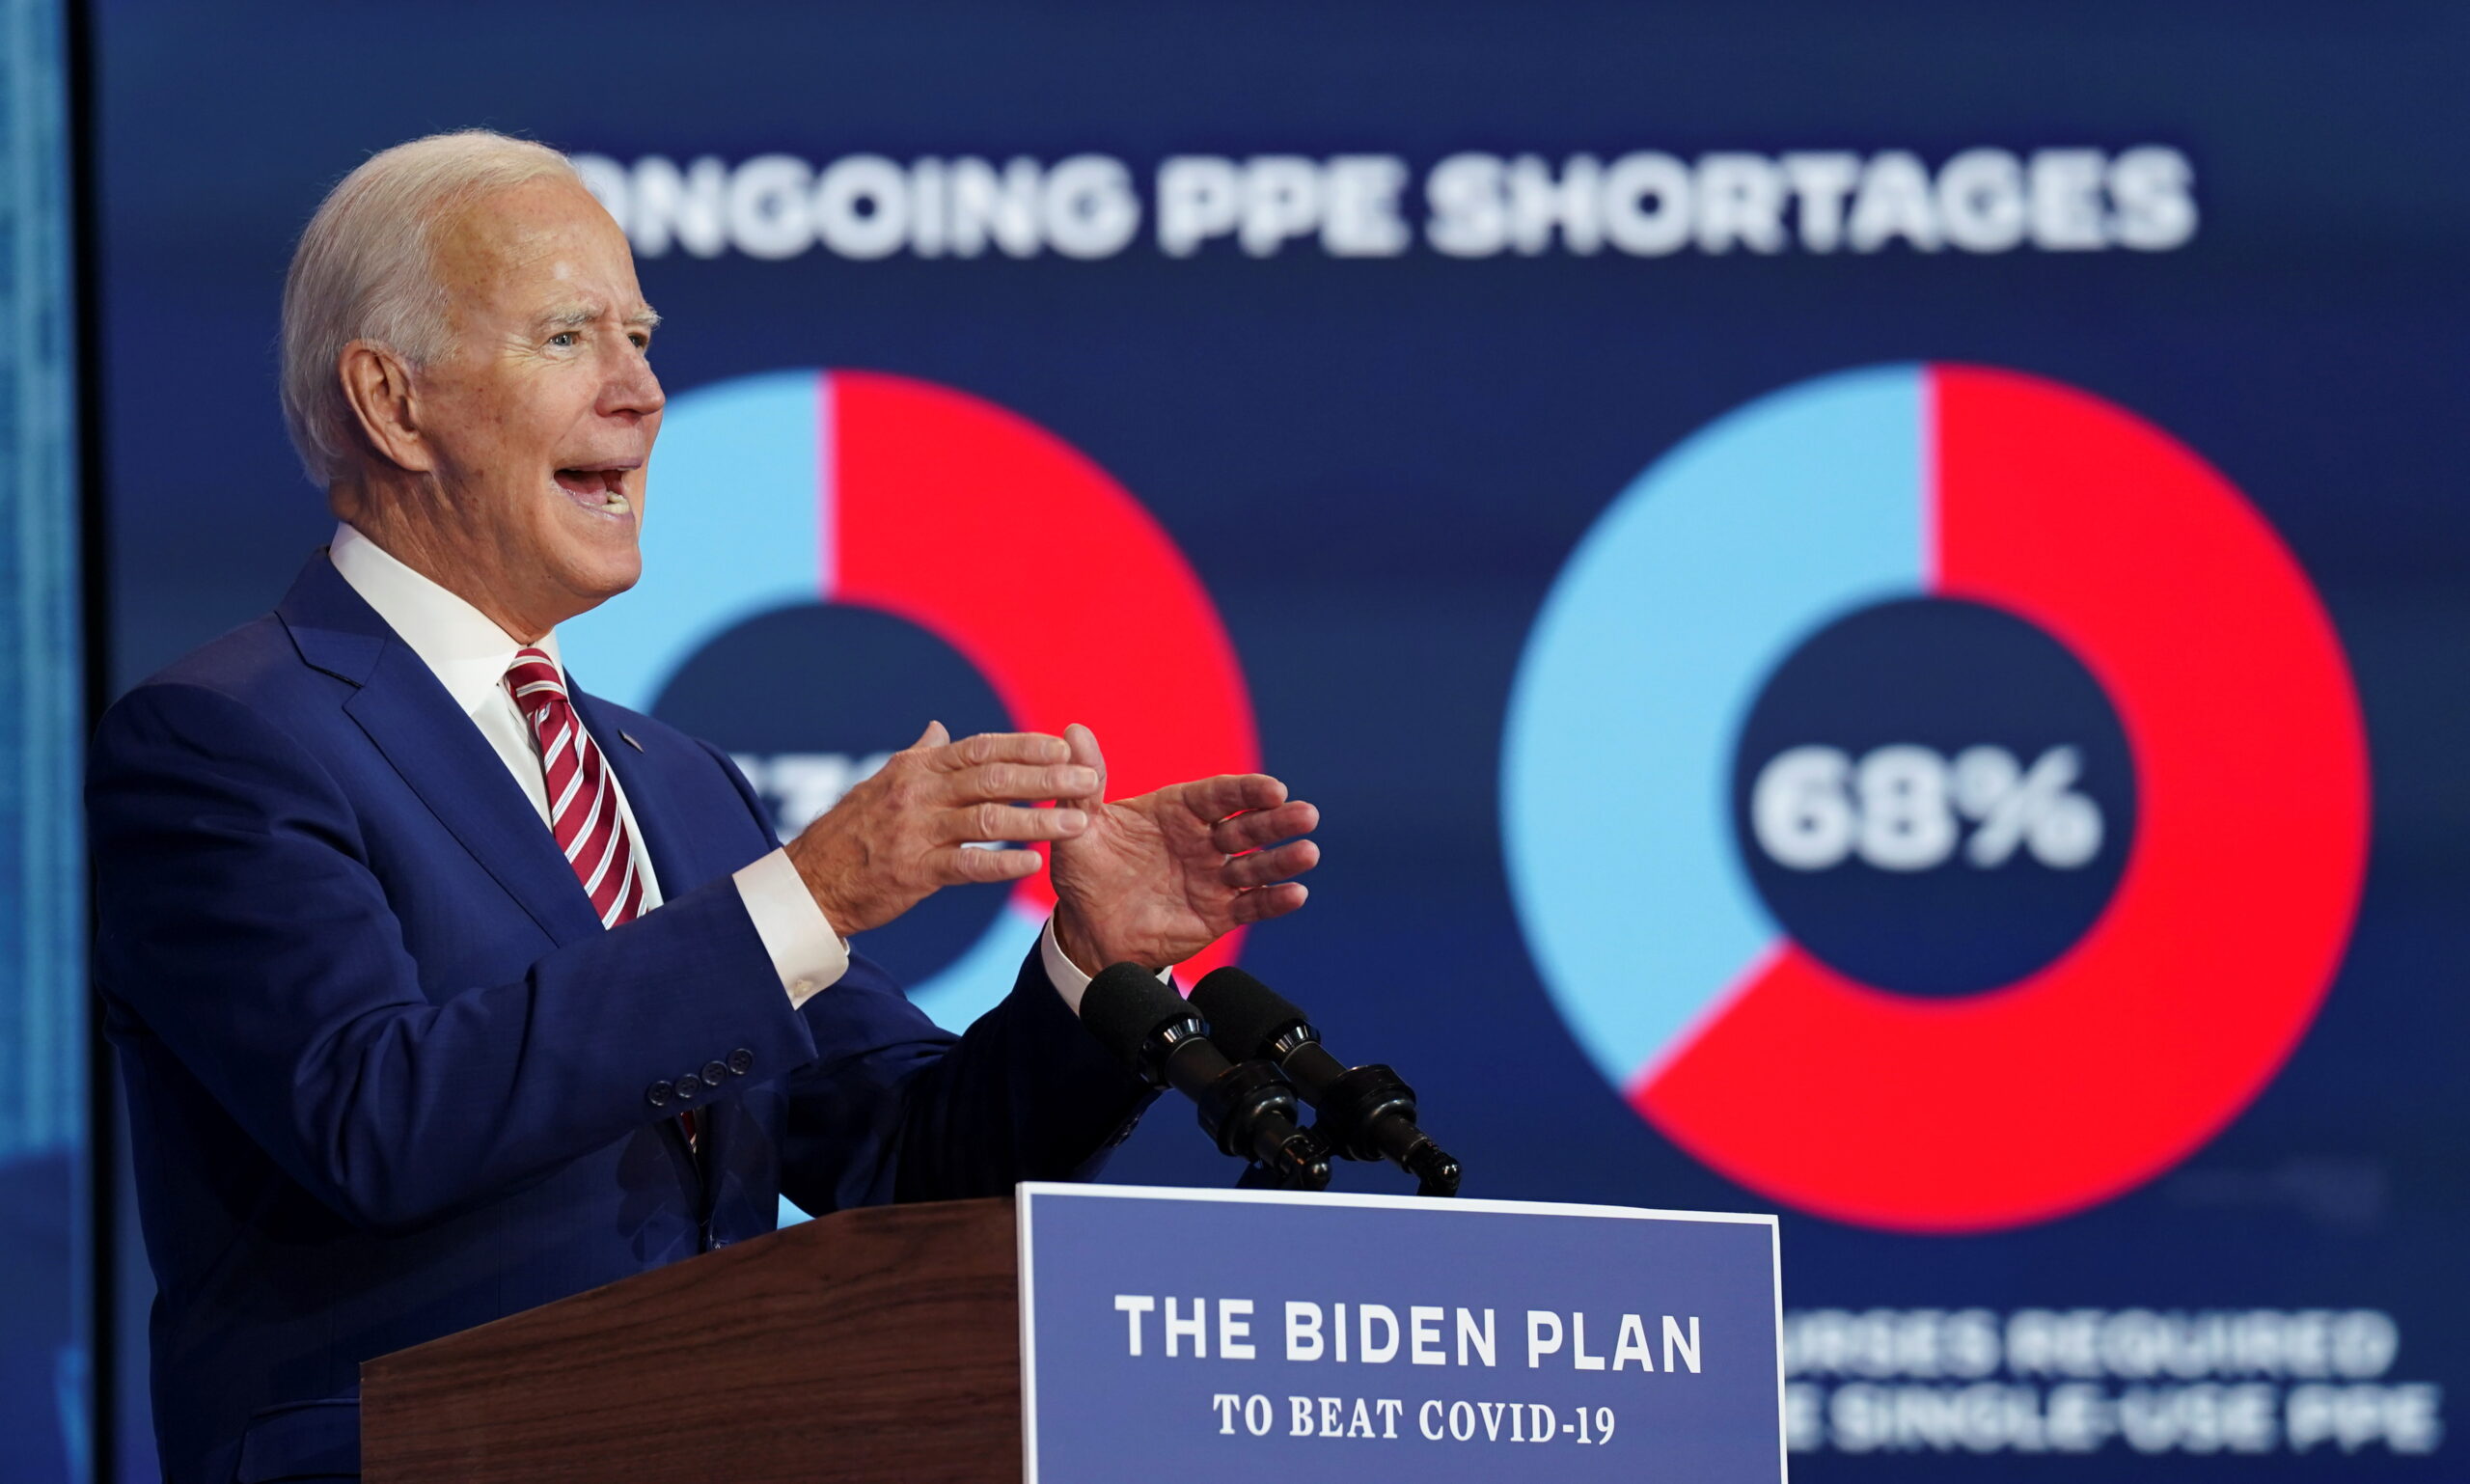 El candidato presidencial demócrata, Joe Biden, habla sobre COVID-19 en Wilmington, Delaware, EEUU, Octubre 23, 2020. REUTERS/Kevin Lamarque